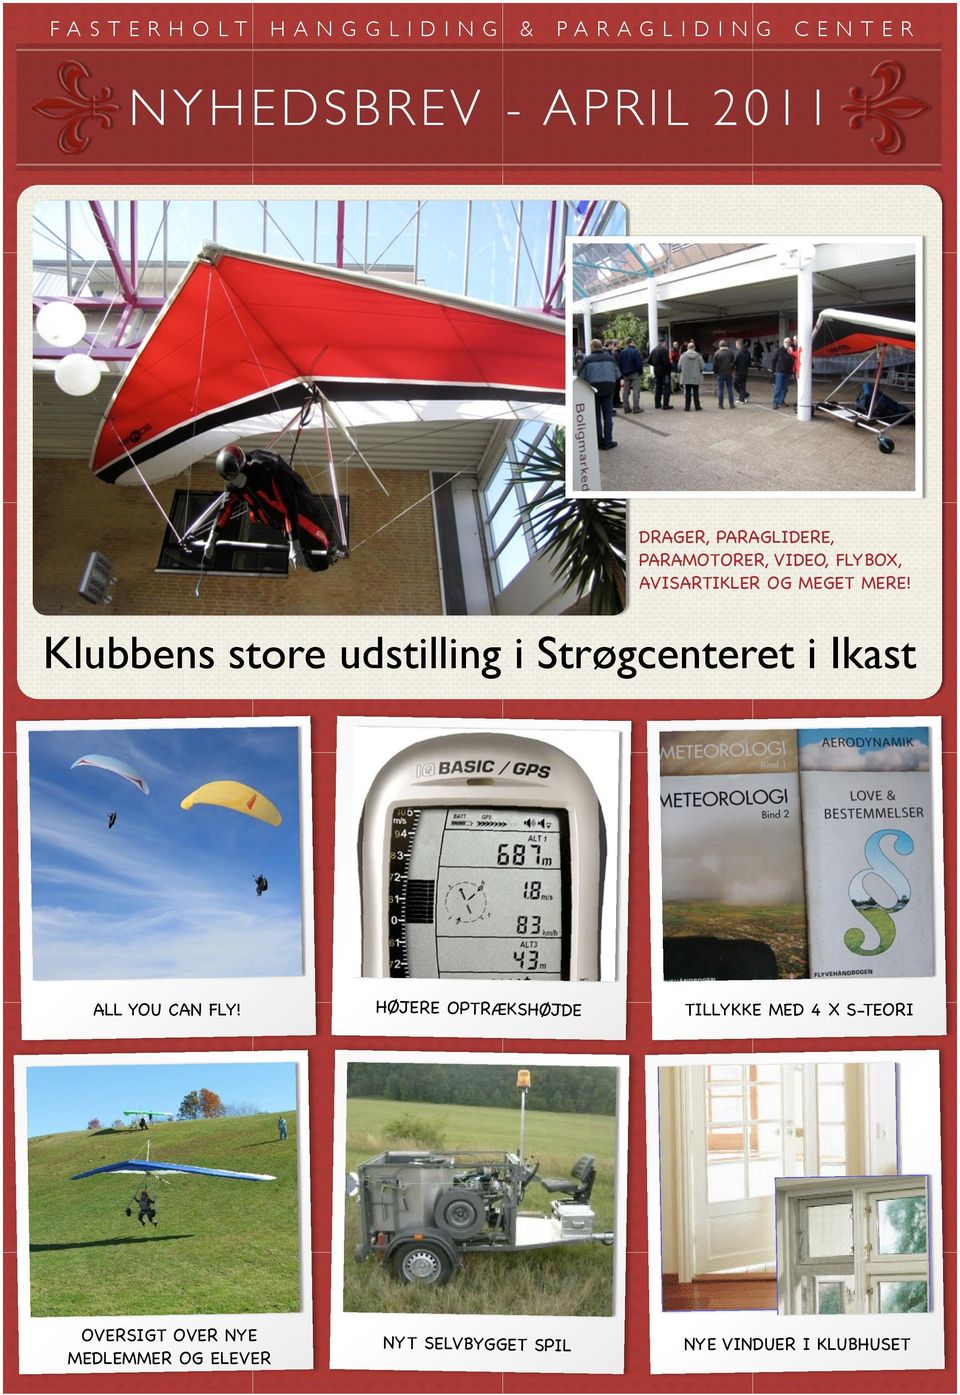 Klubbens store udstilling i Strøgcenteret i Ikast ALL YOU CAN FLY!